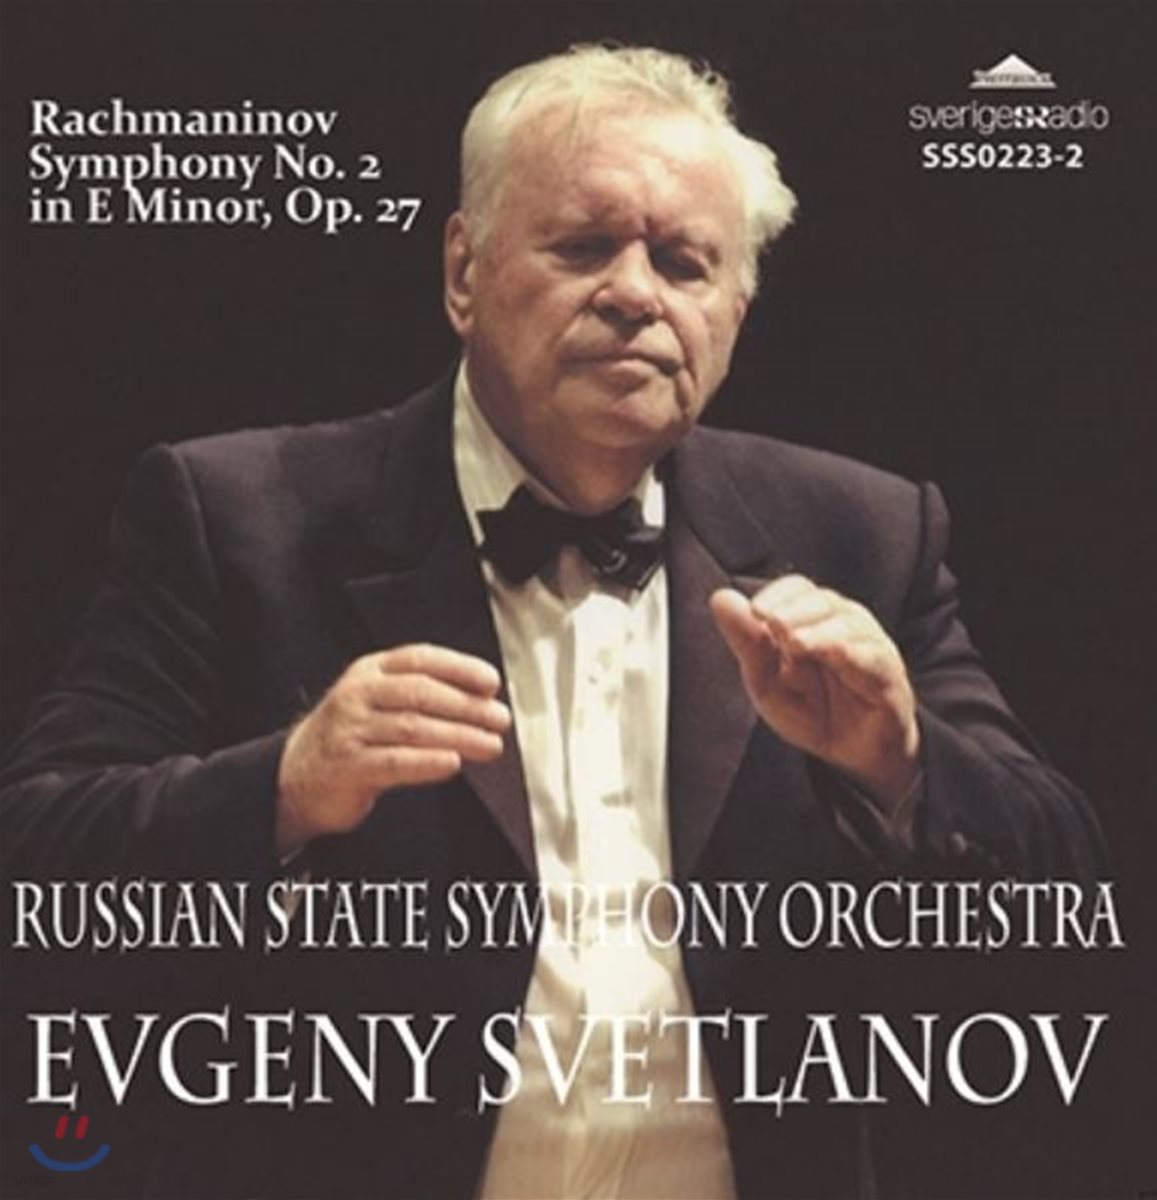 Evgeny Svetlanov 라흐마니노프: 교향곡 2번 (Rachmaninov: Symphony Op. 27)